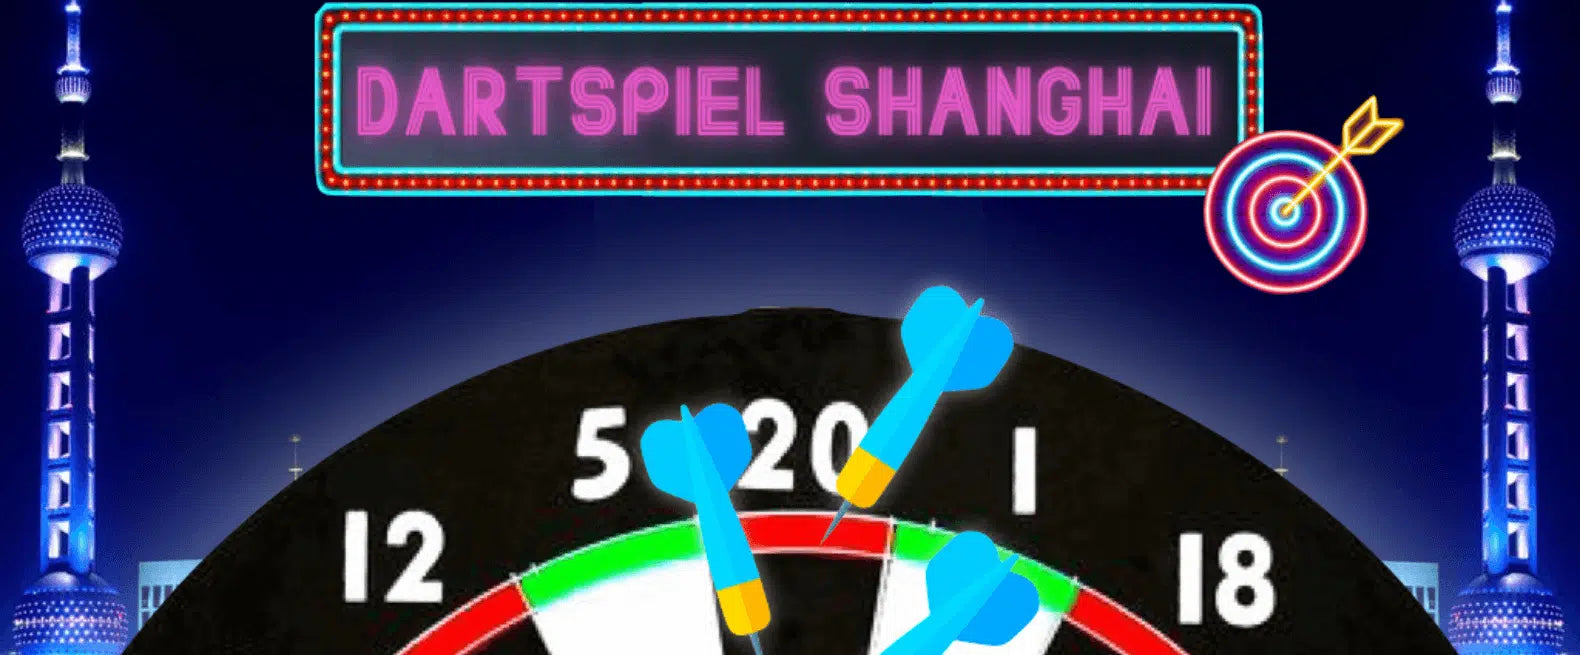 Dartspiel Shanghai – Dart Shanghai Regeln schnell erklärt